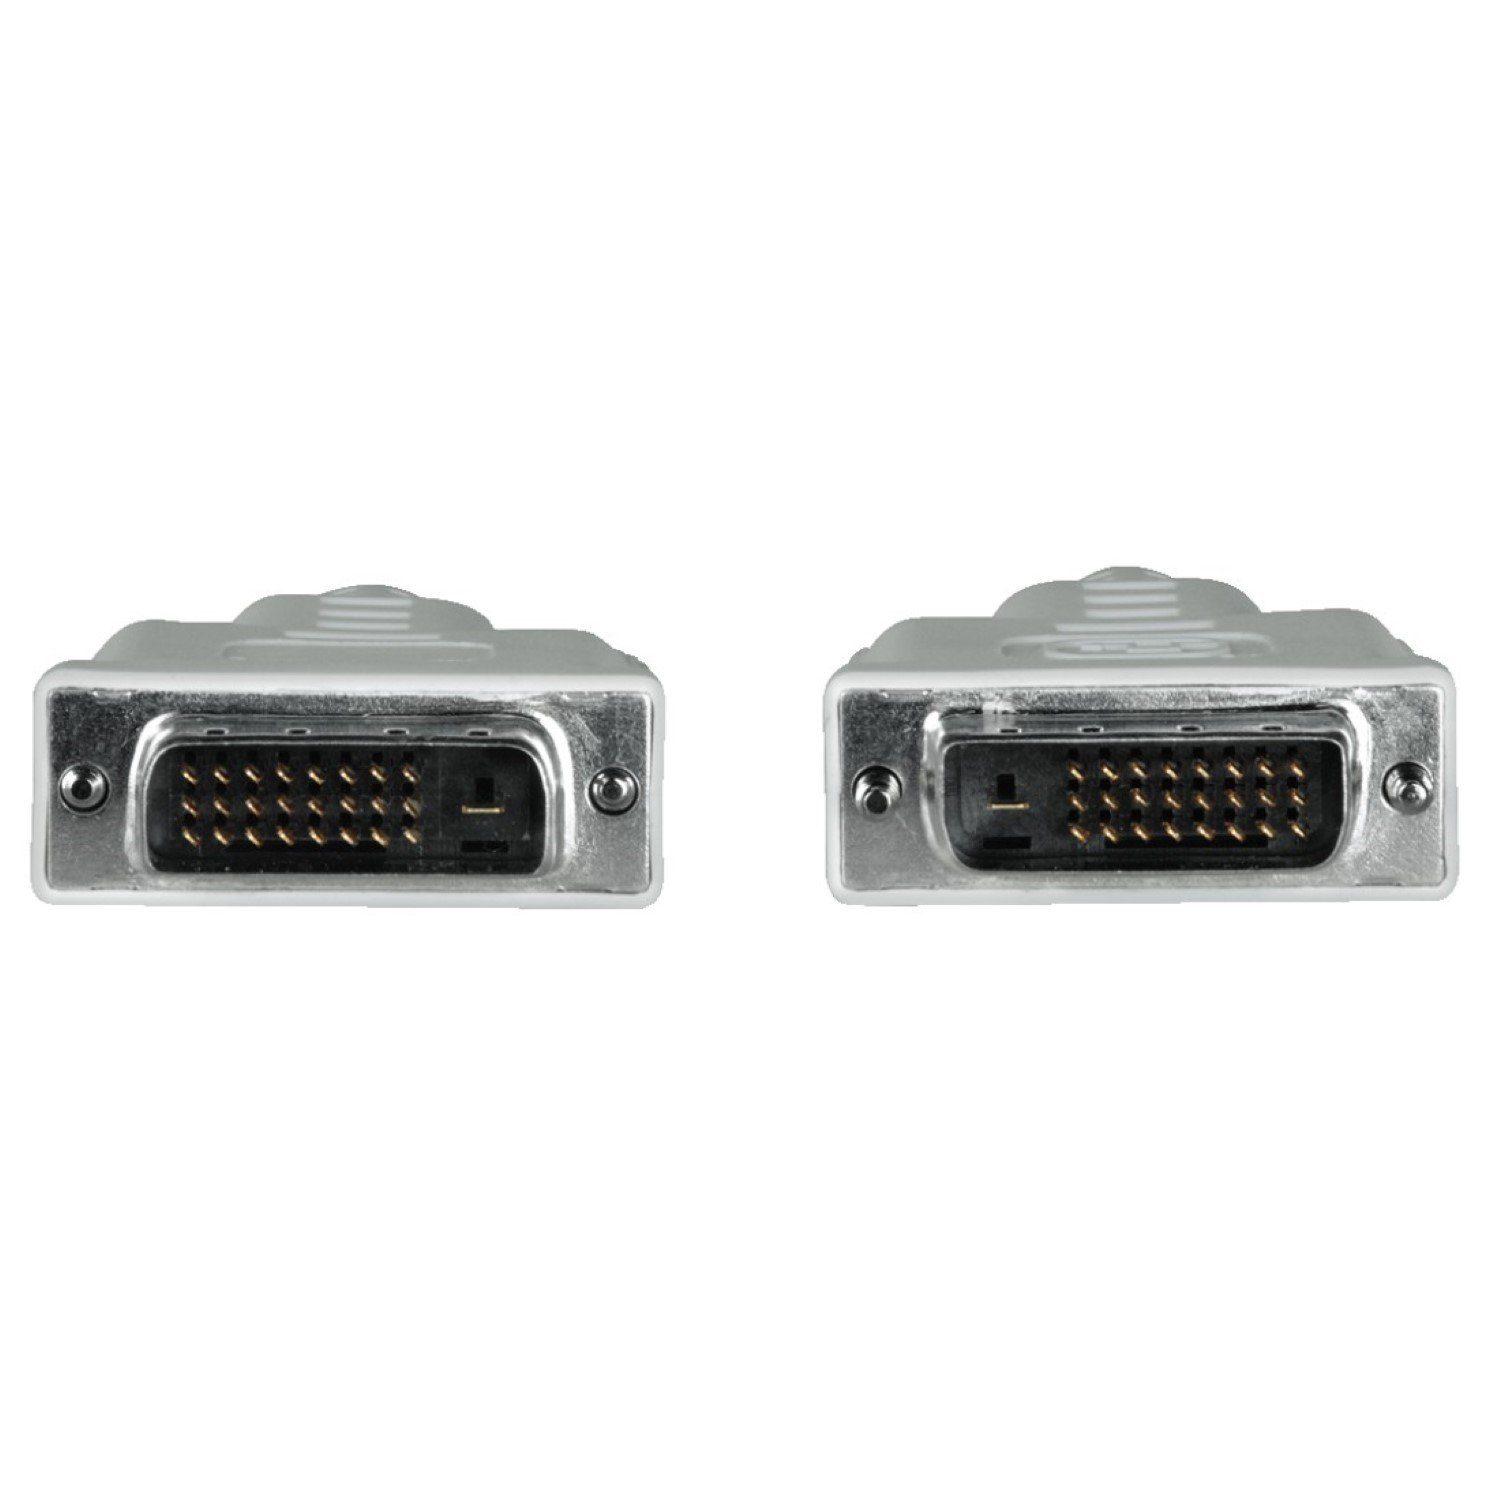 Hama (180 cm), 1,8m Verbindungskabel Video-Kabel, Cat HDTV 5e DVI-Kabel Kein DVI, Patch-Kabel Gigabit Ethernet